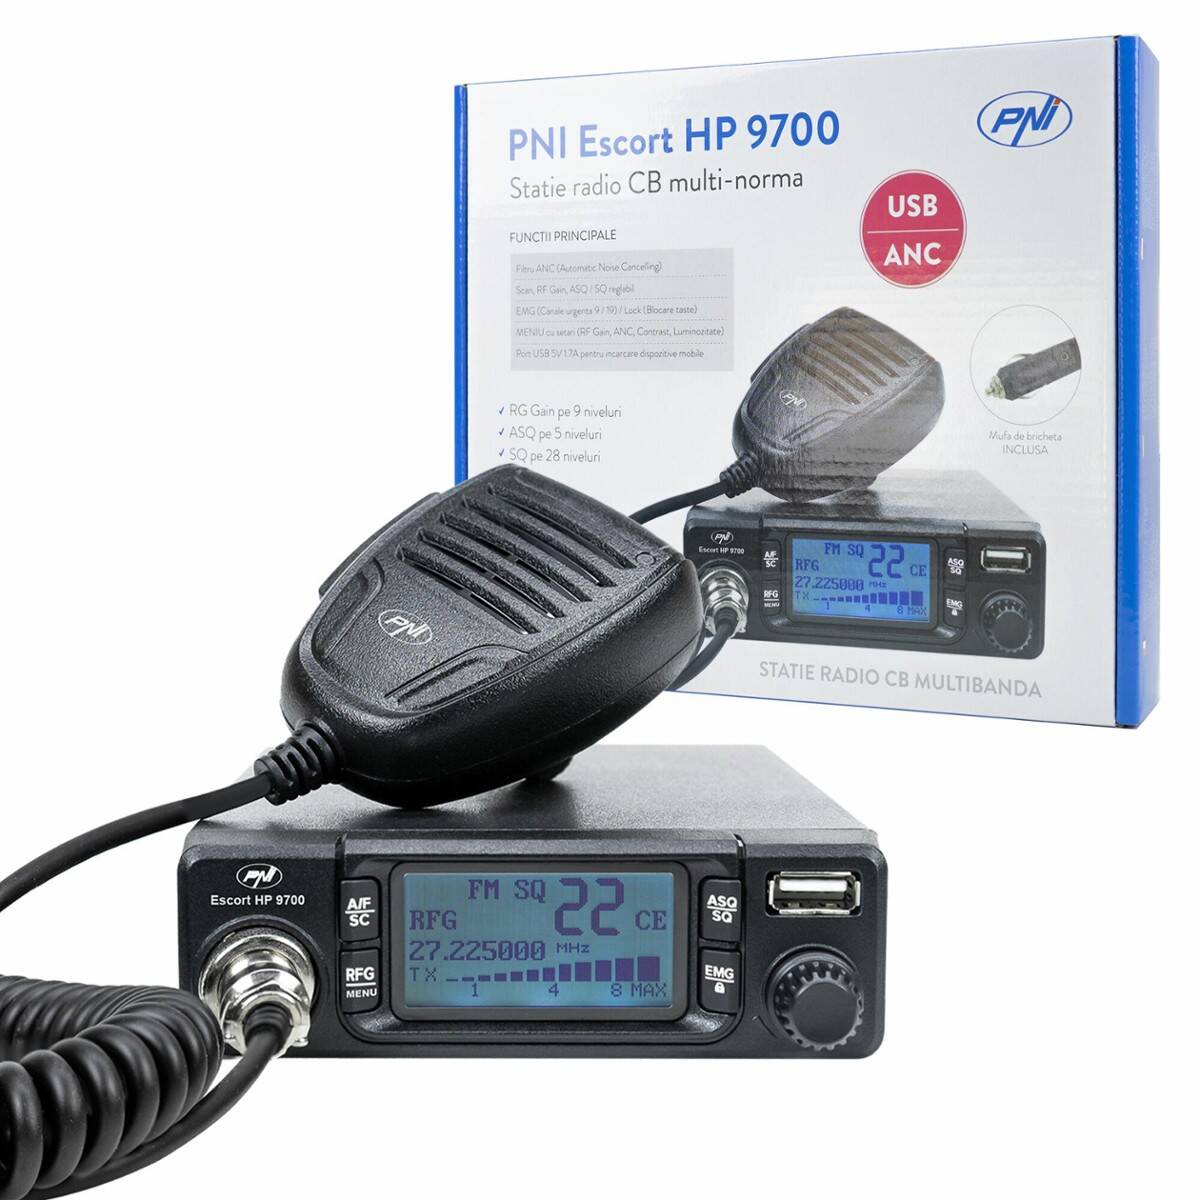 Radio Cb Pni Hp9700 Escort USB, ANC, ASQ